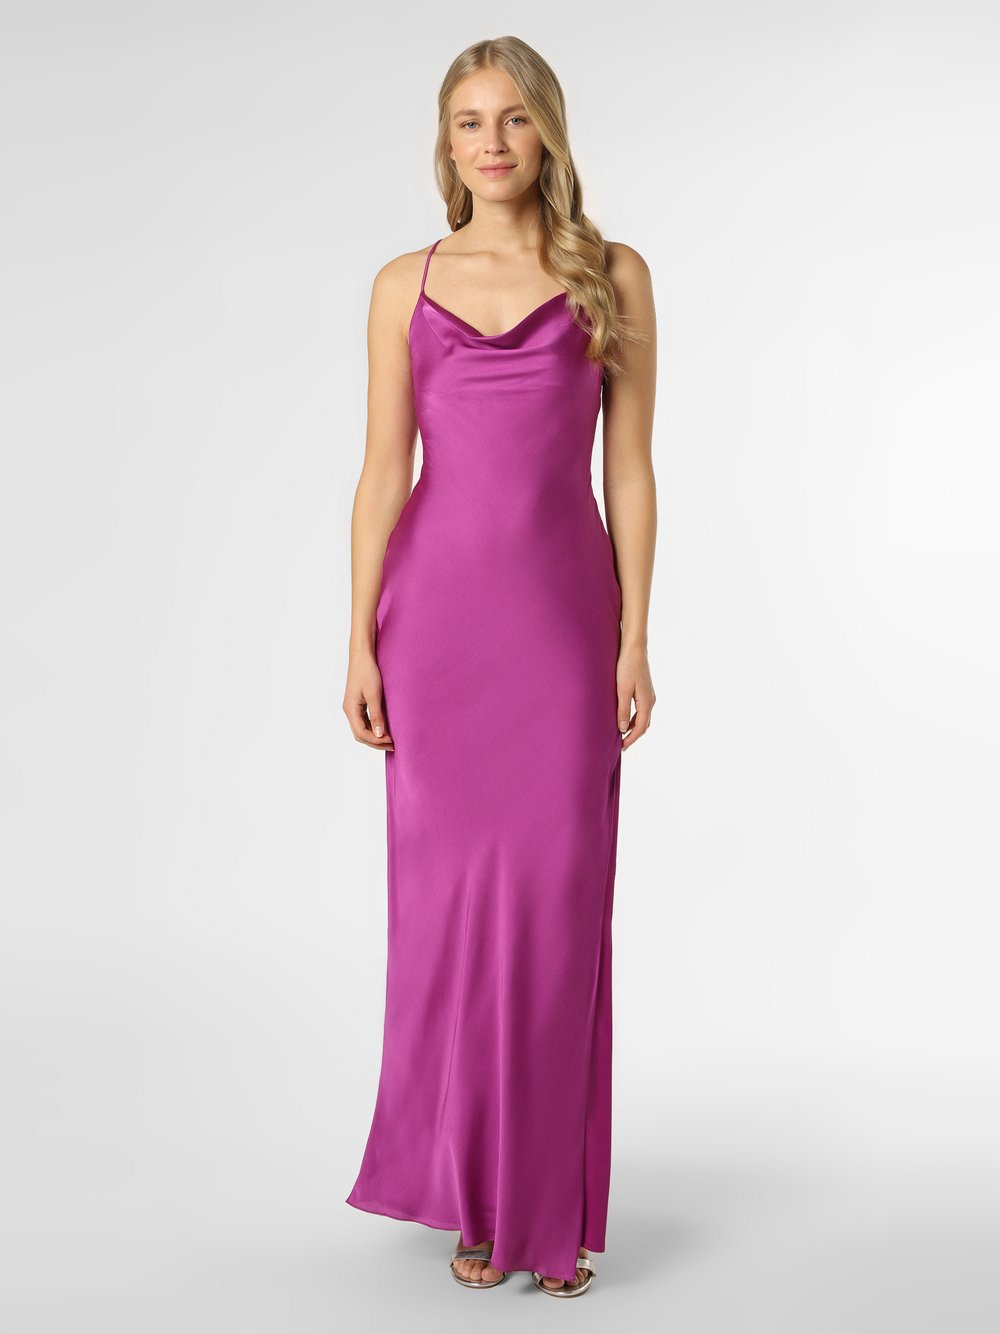 Unique - Damska sukienka wieczorowa z etolą, lila